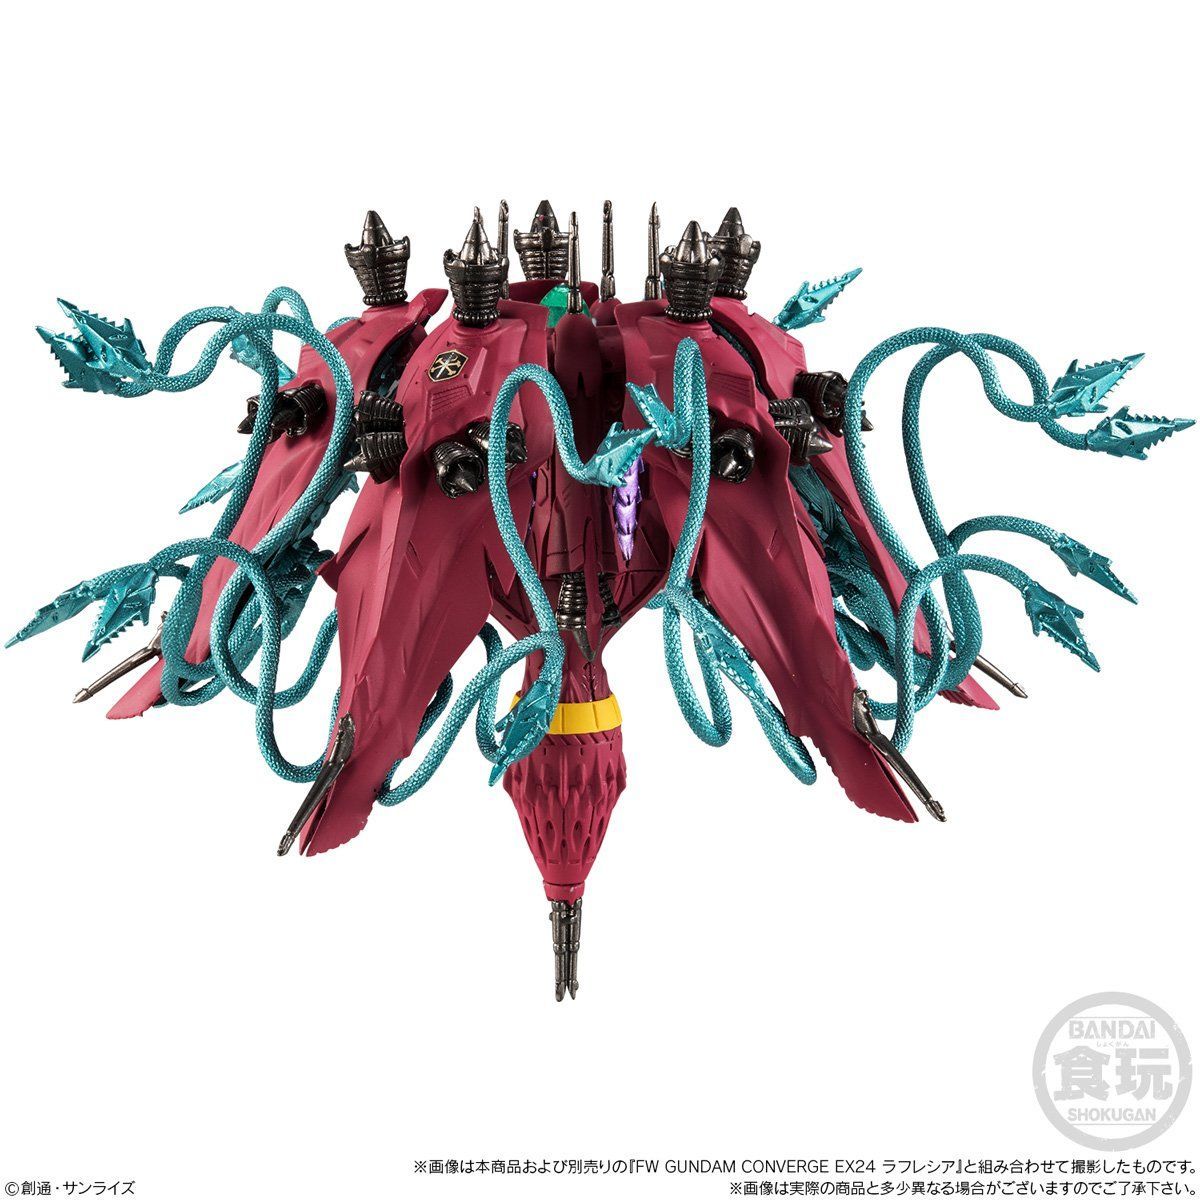 Fw Gundam Converge ヘビーガン ラフレシアオプションパーツセット プレミアムバンダイ限定 機動戦士ガンダムf91 趣味 コレクション バンダイナムコグループ公式通販サイト